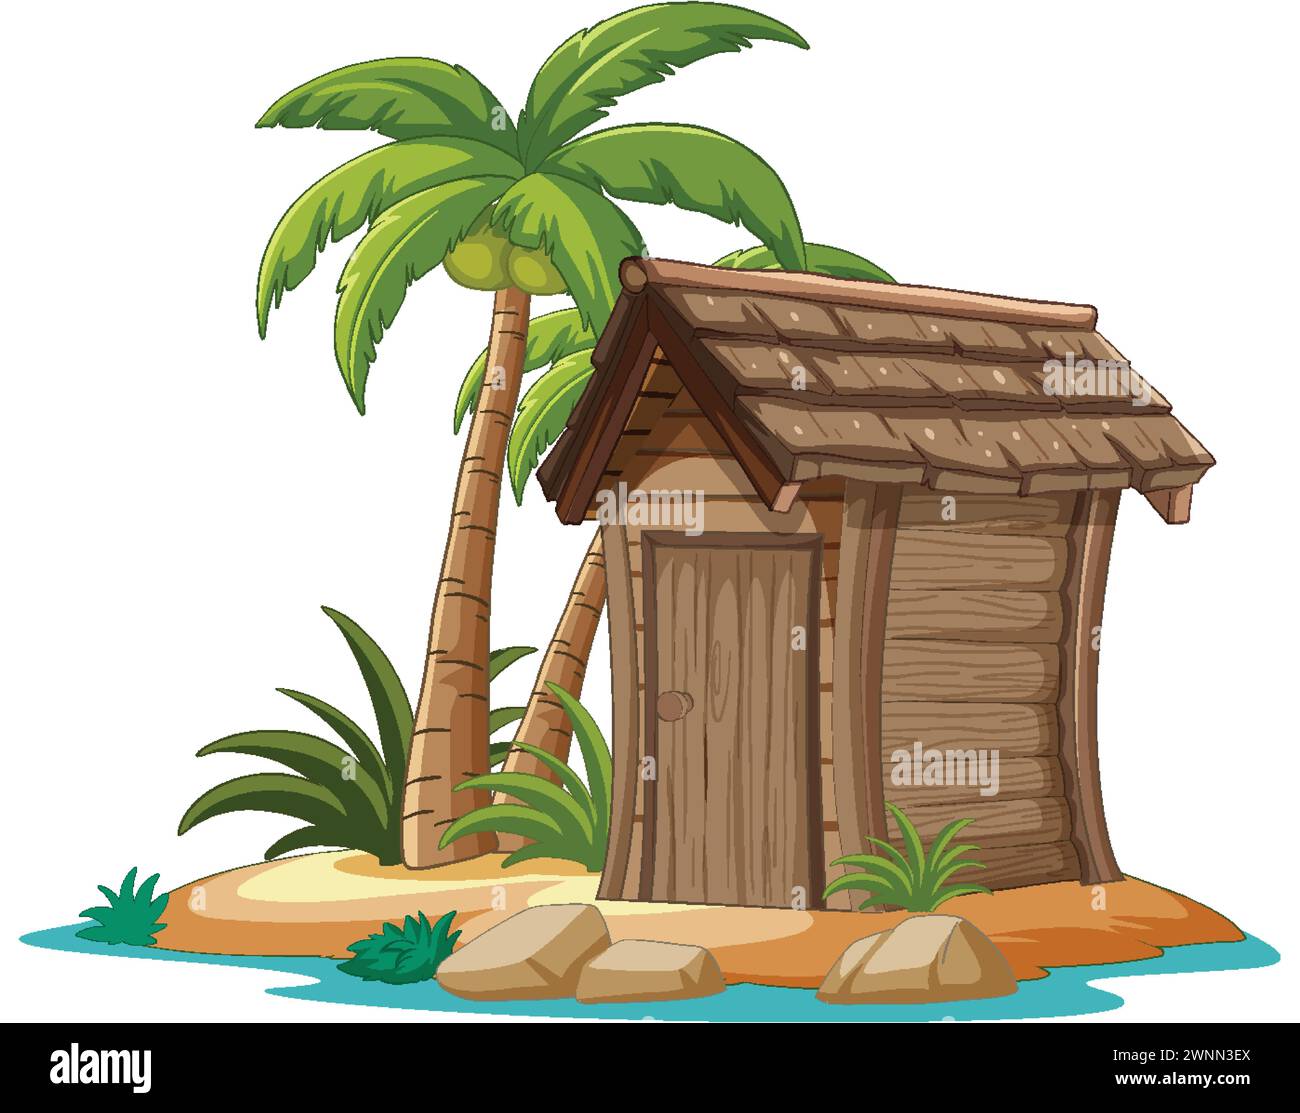 Vektor-Illustration einer kleinen Holzhütte auf einer Insel Stock Vektor